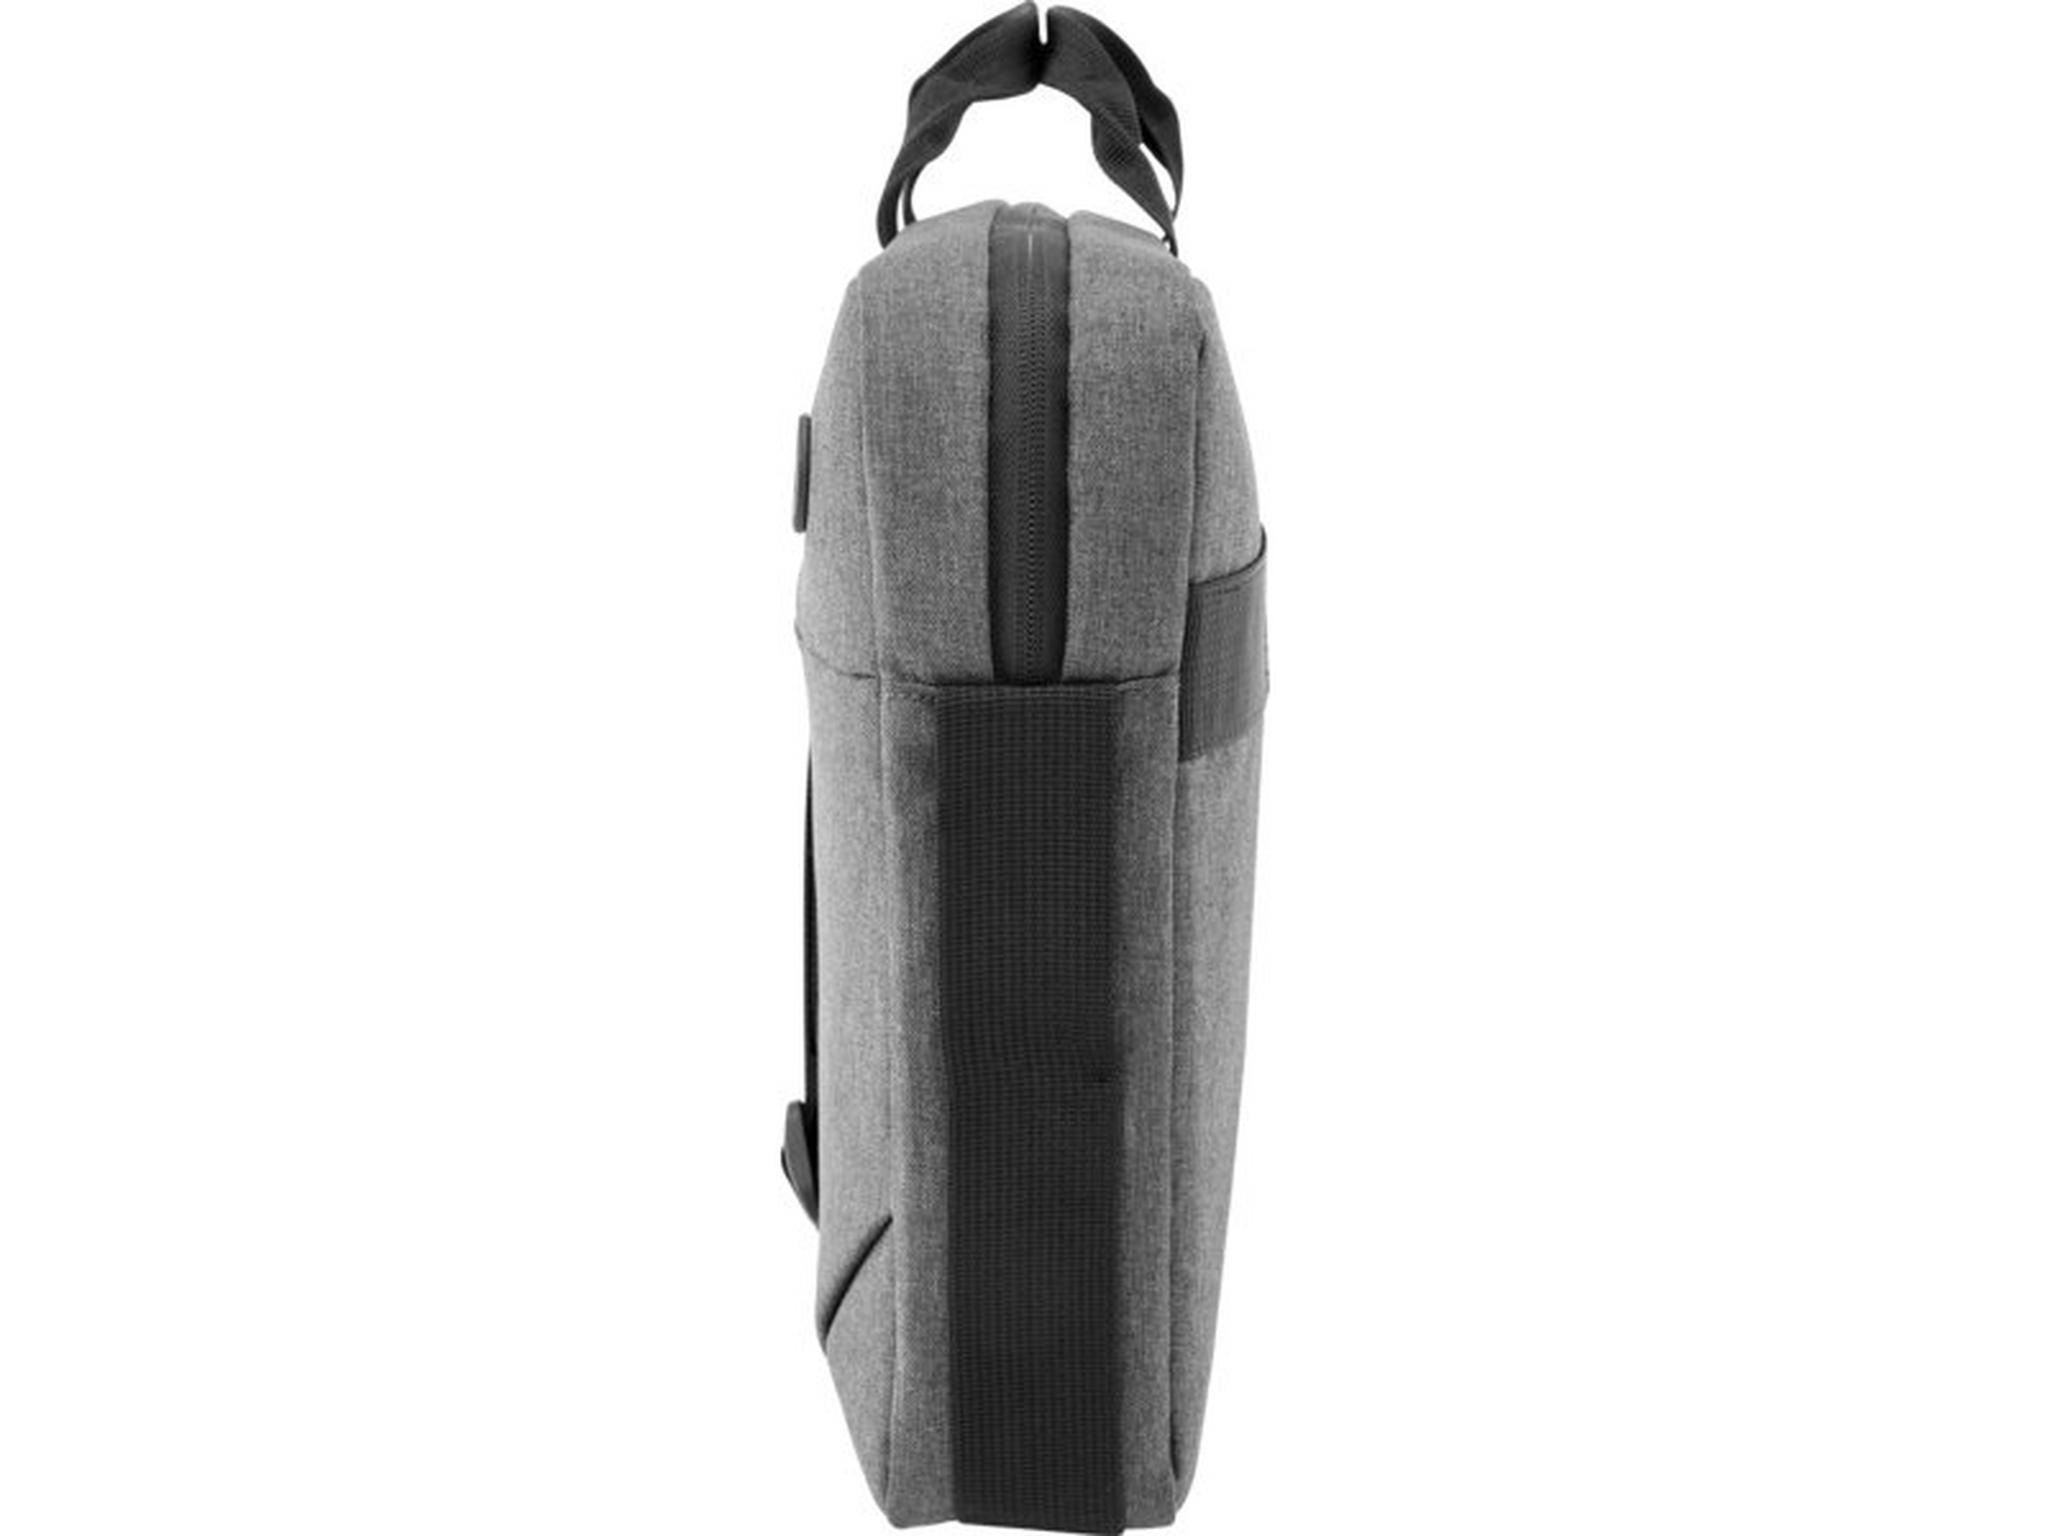 حقيبة إتش بي بريلود للابتوب بحجم 17  بوصة - رمادي